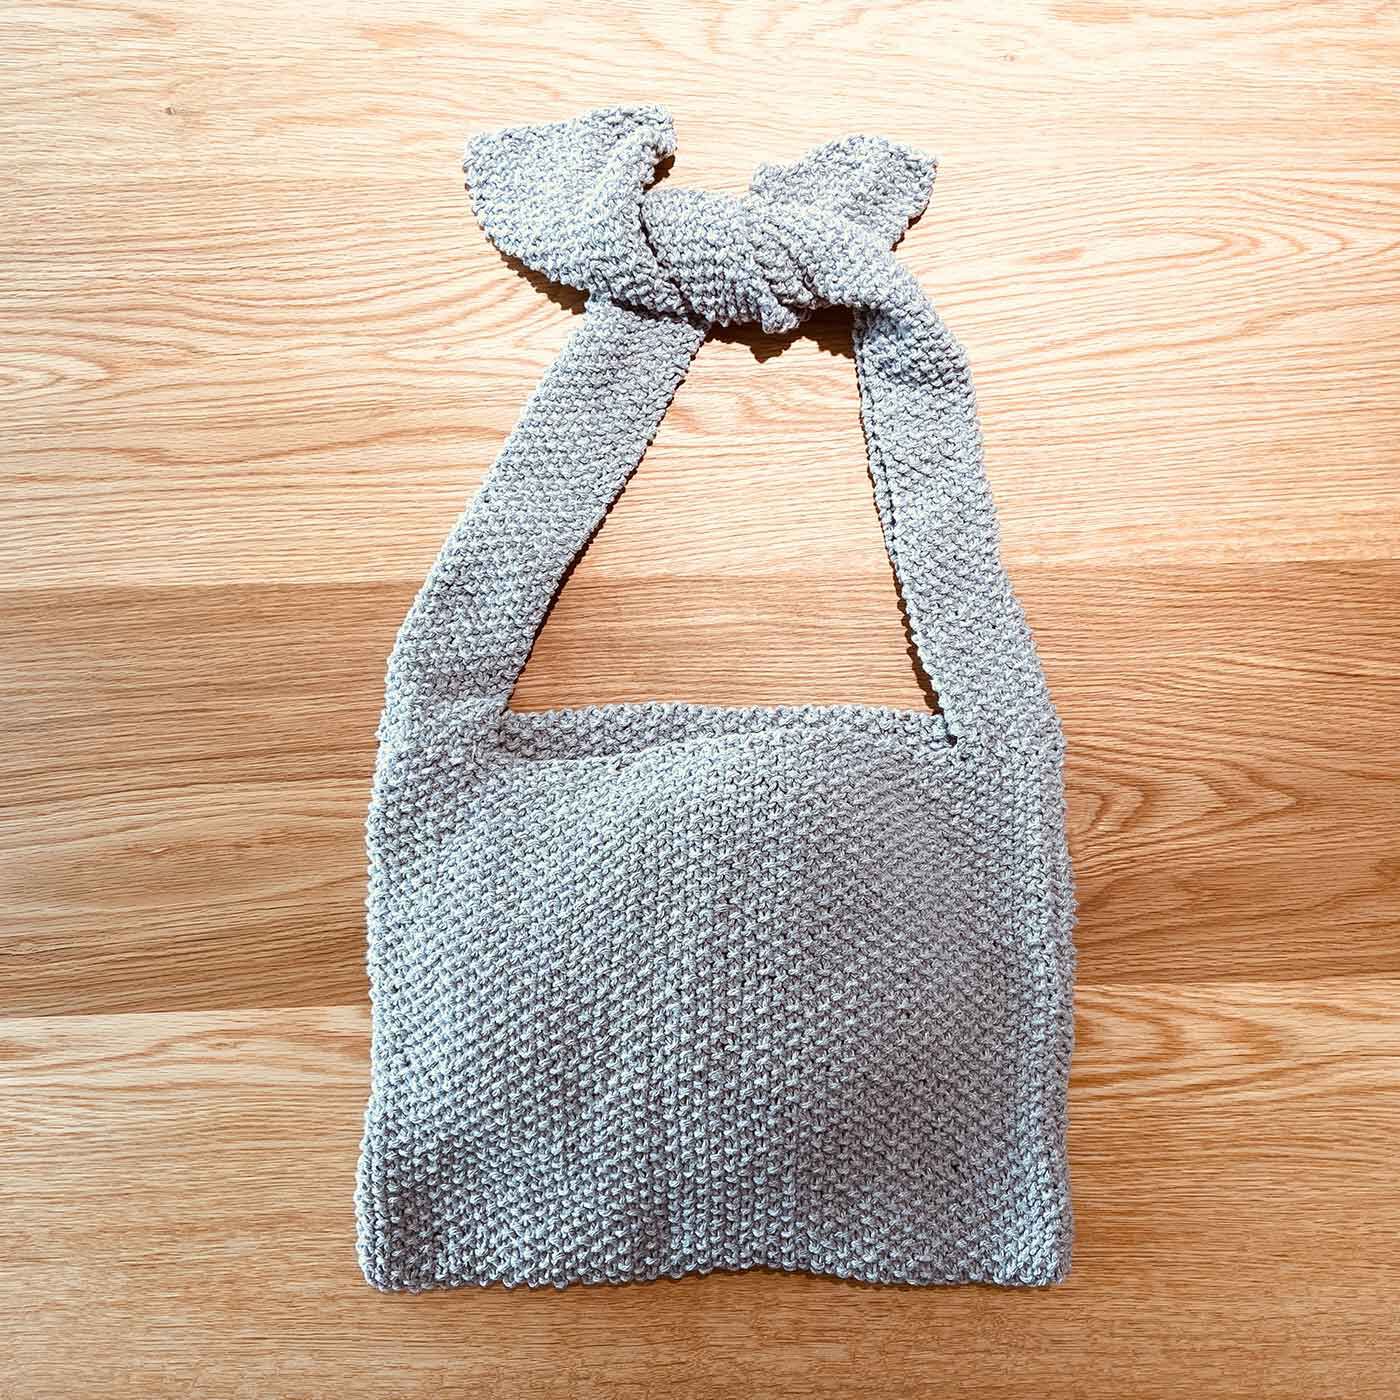 Couturier special|ＤＭＣ　エコバルバンテで編む　かのこ編み肩かけバッグキット|3.グレーの作品例です。